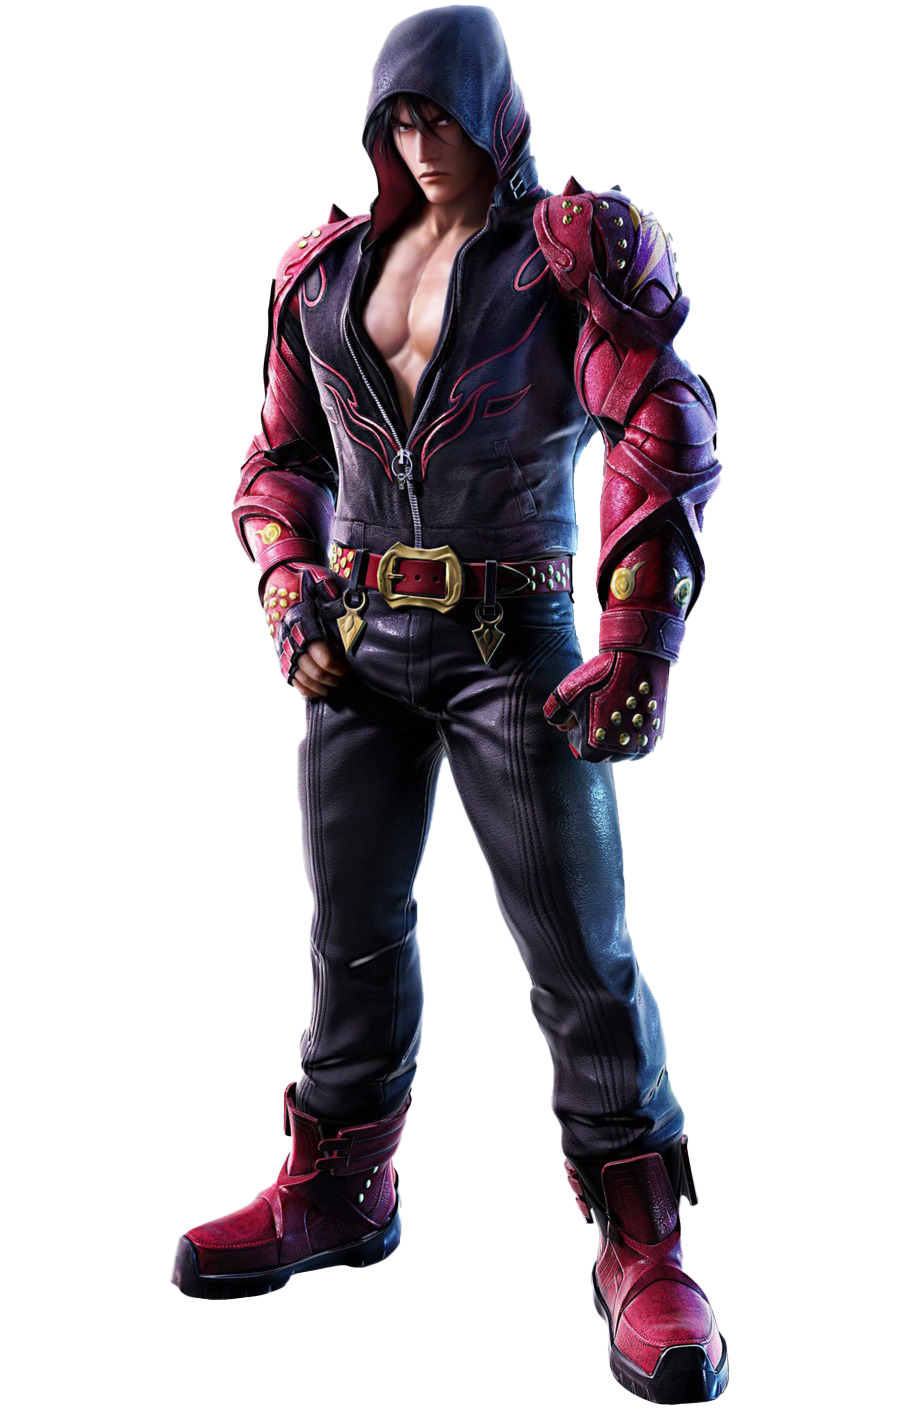 Download PNG image - Tekken Jin Kazama PNG Image 